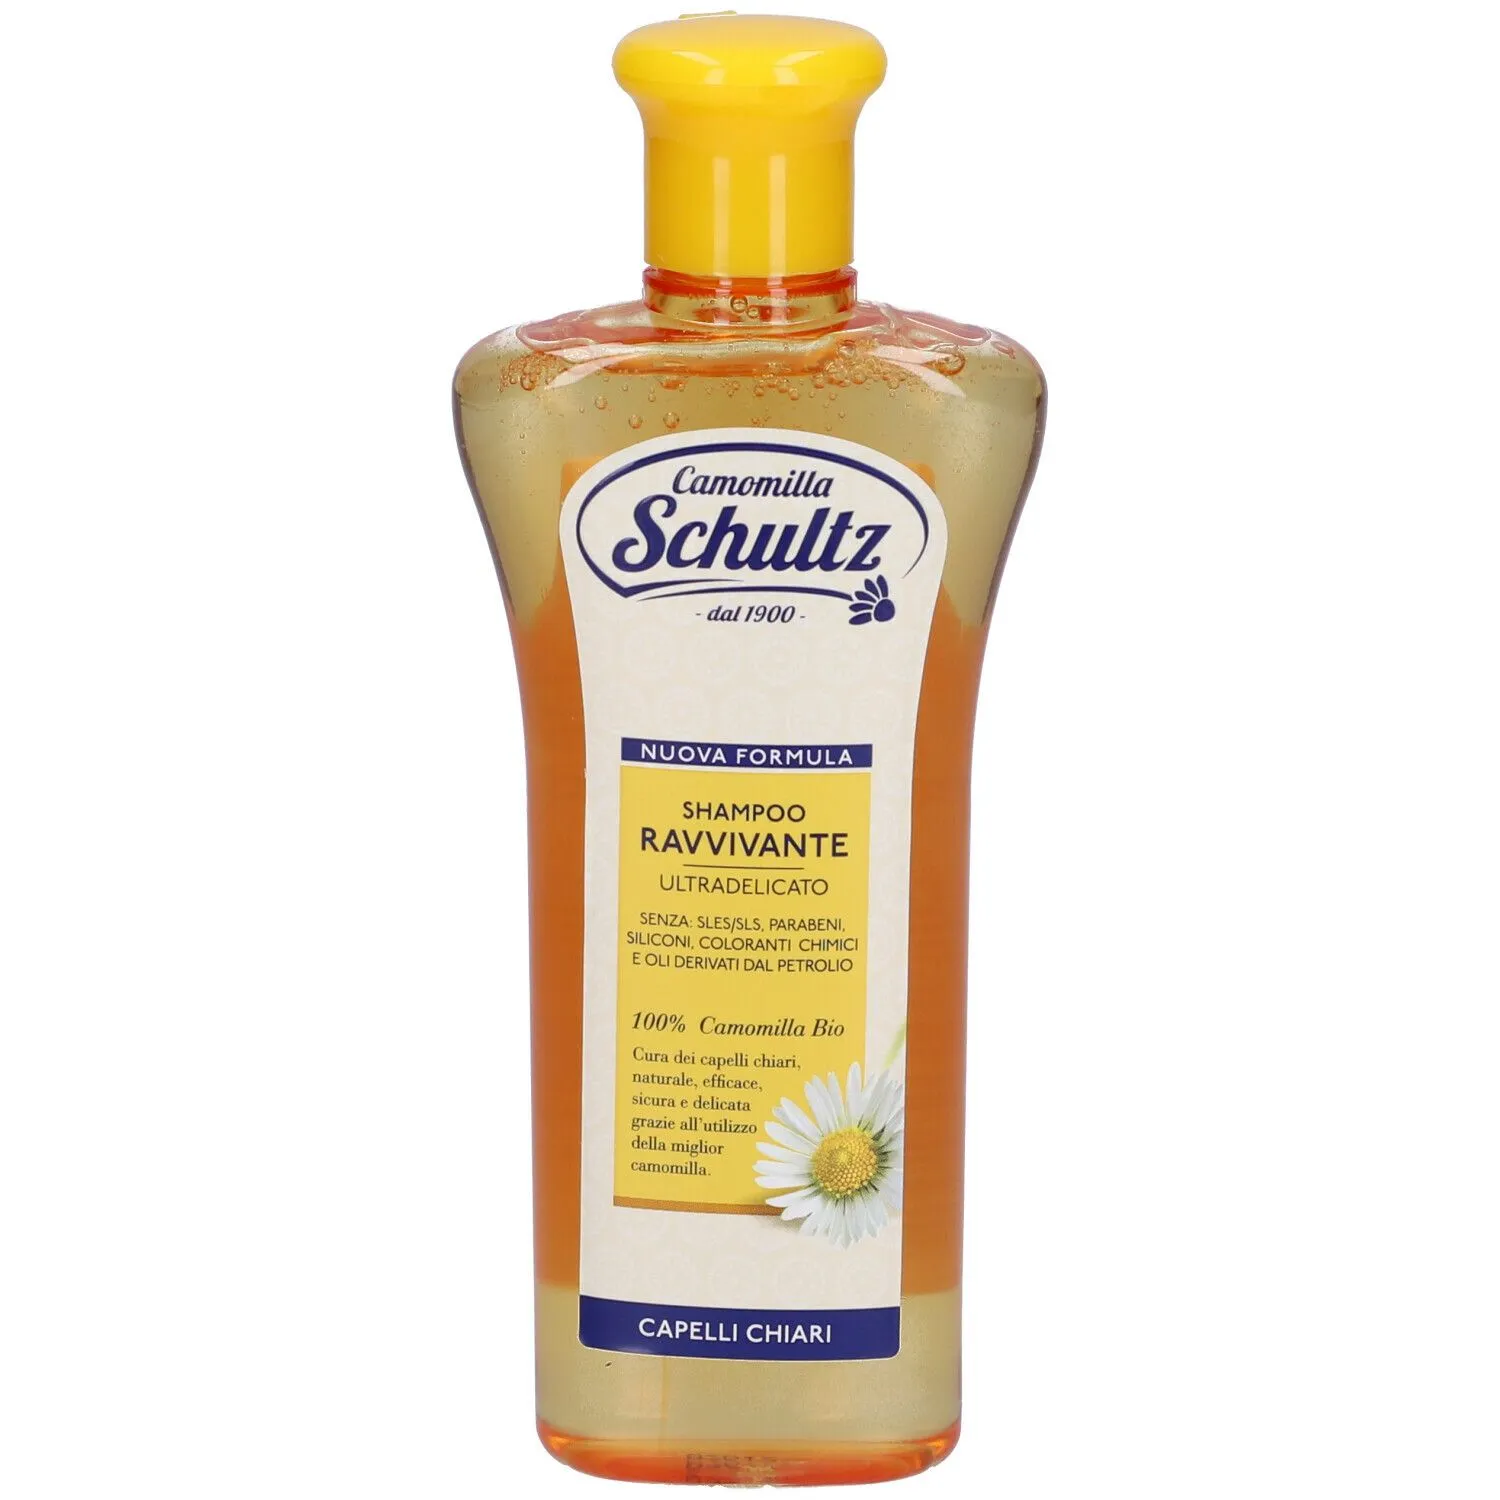 Camomilla Schultz Shampoo Ravvivante Ultradelicato